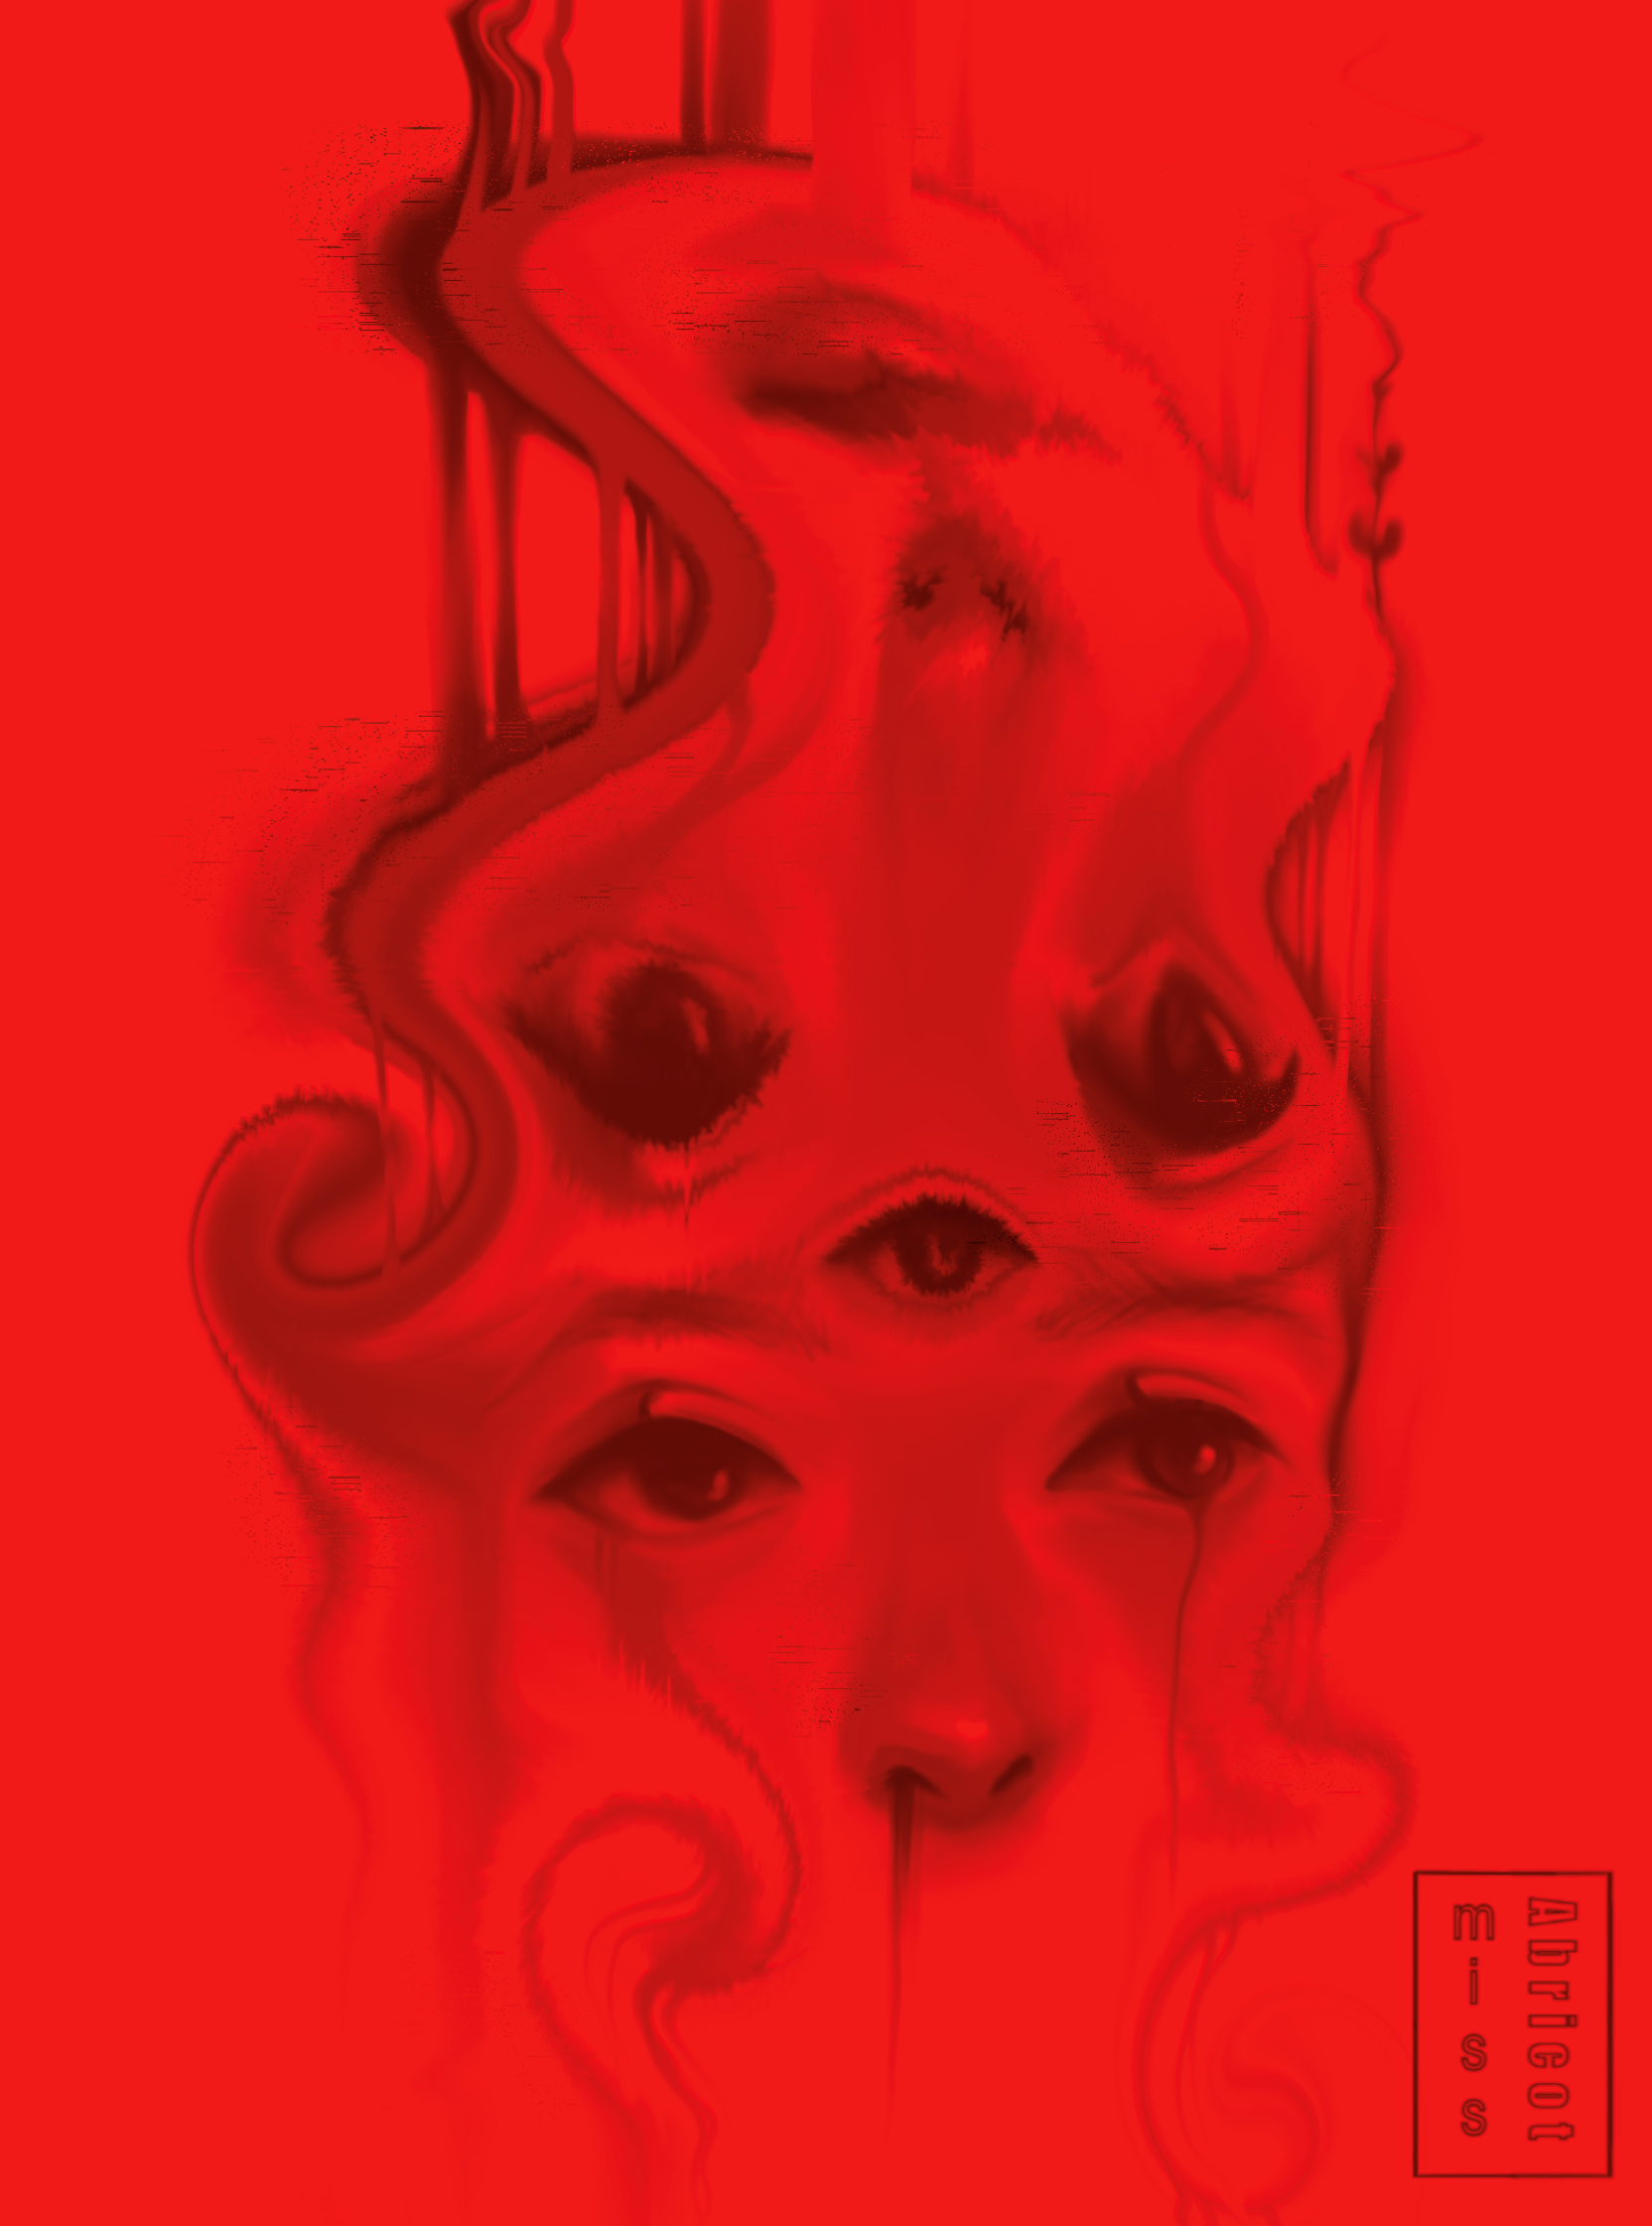 dessin d'une face sur fond rouge avec effet liquify en spirale